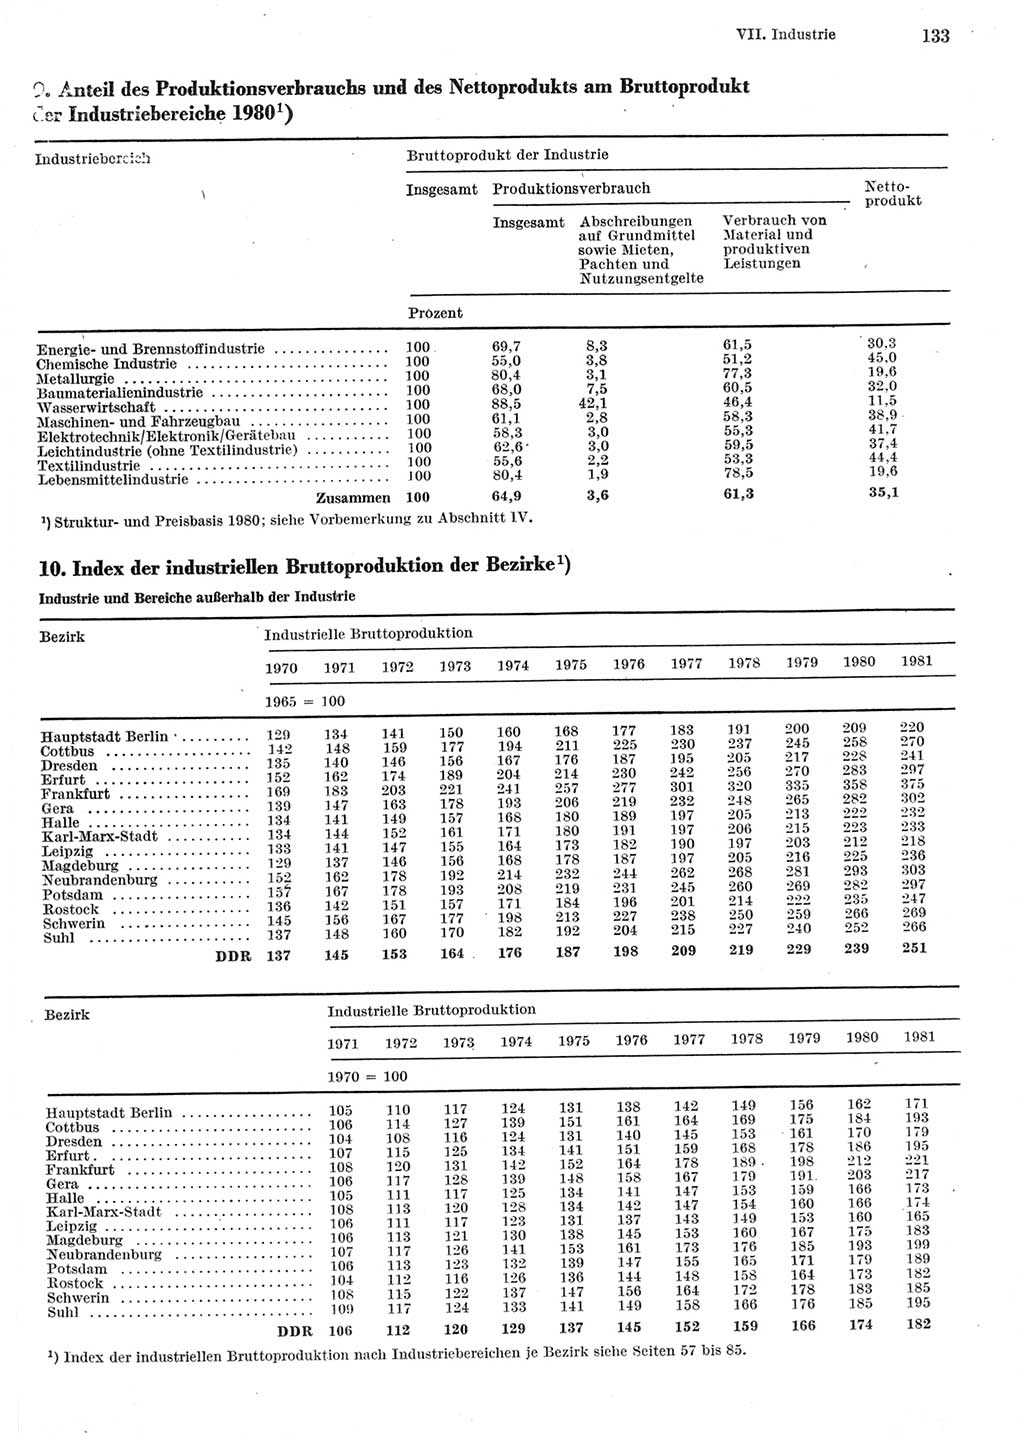 Statistisches Jahrbuch der Deutschen Demokratischen Republik (DDR) 1982, Seite 133 (Stat. Jb. DDR 1982, S. 133)